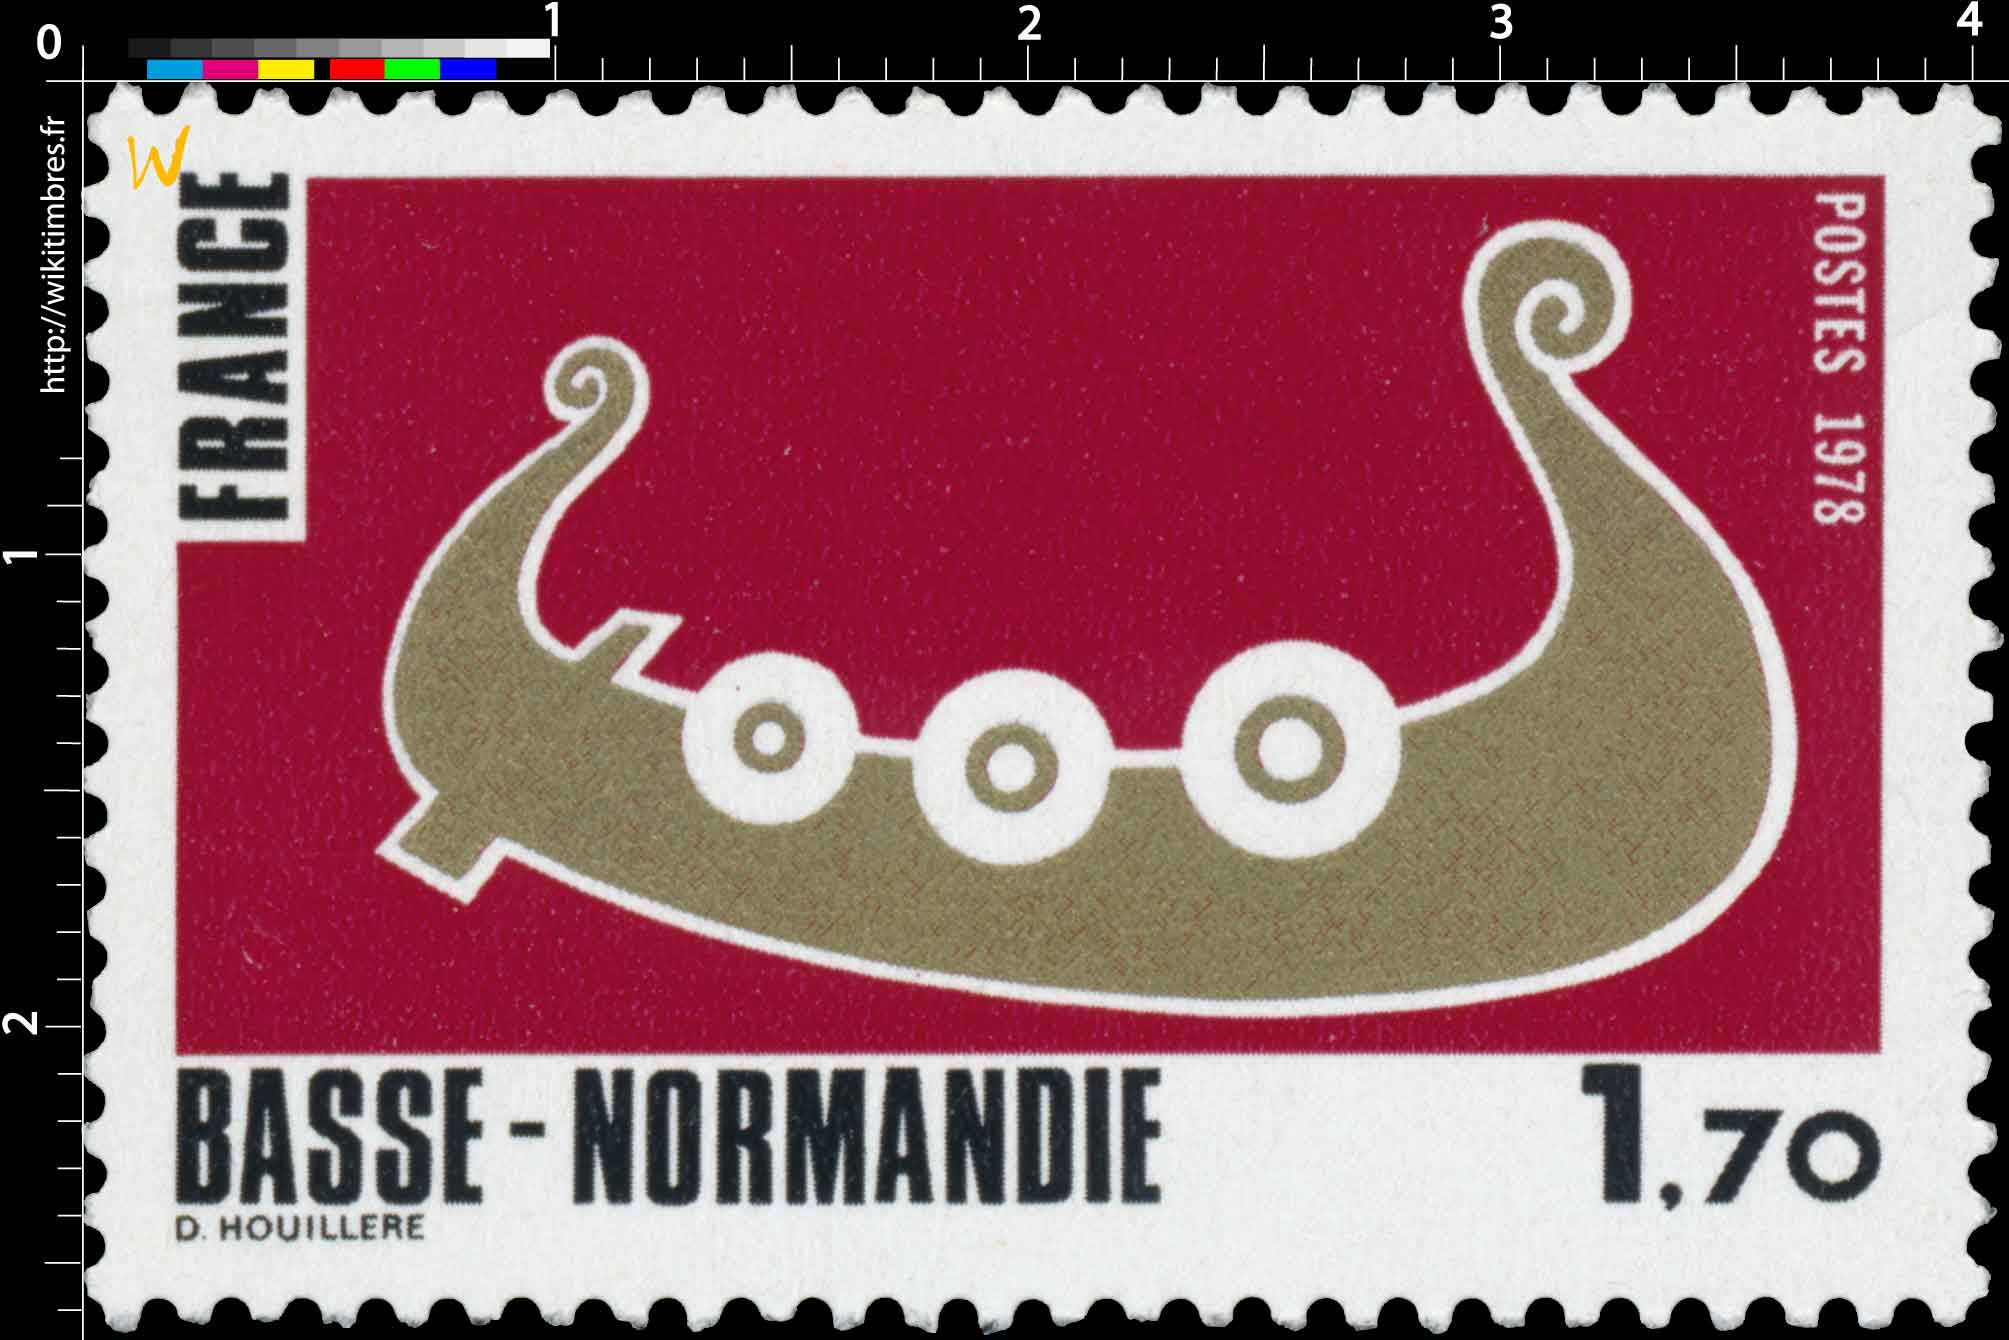 1978 BASSE-NORMANDIE